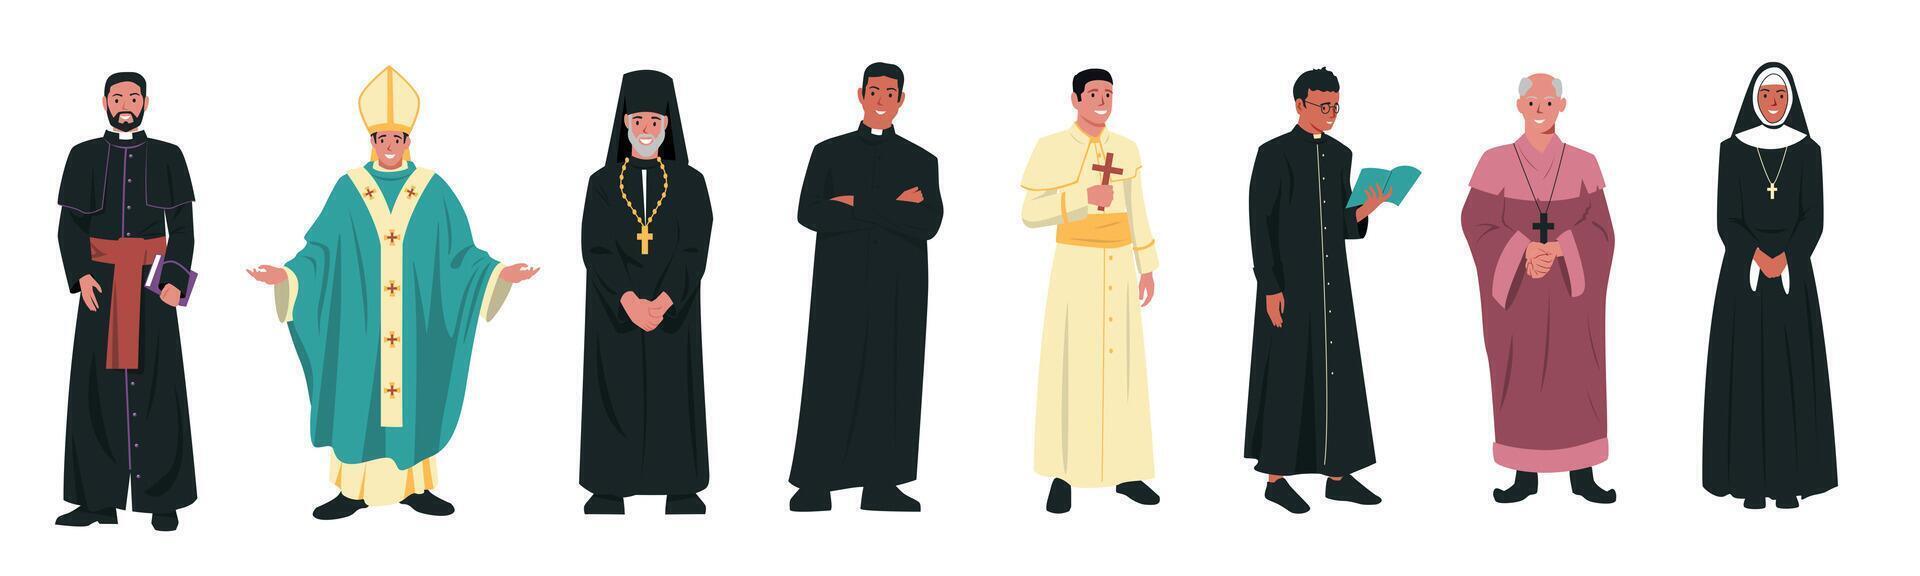 católico Iglesia caracteres. cristiano religión Iglesia líderes en diferente ropa, catolicismo religioso clérigo pastor sacerdote papa. vector dibujos animados conjunto